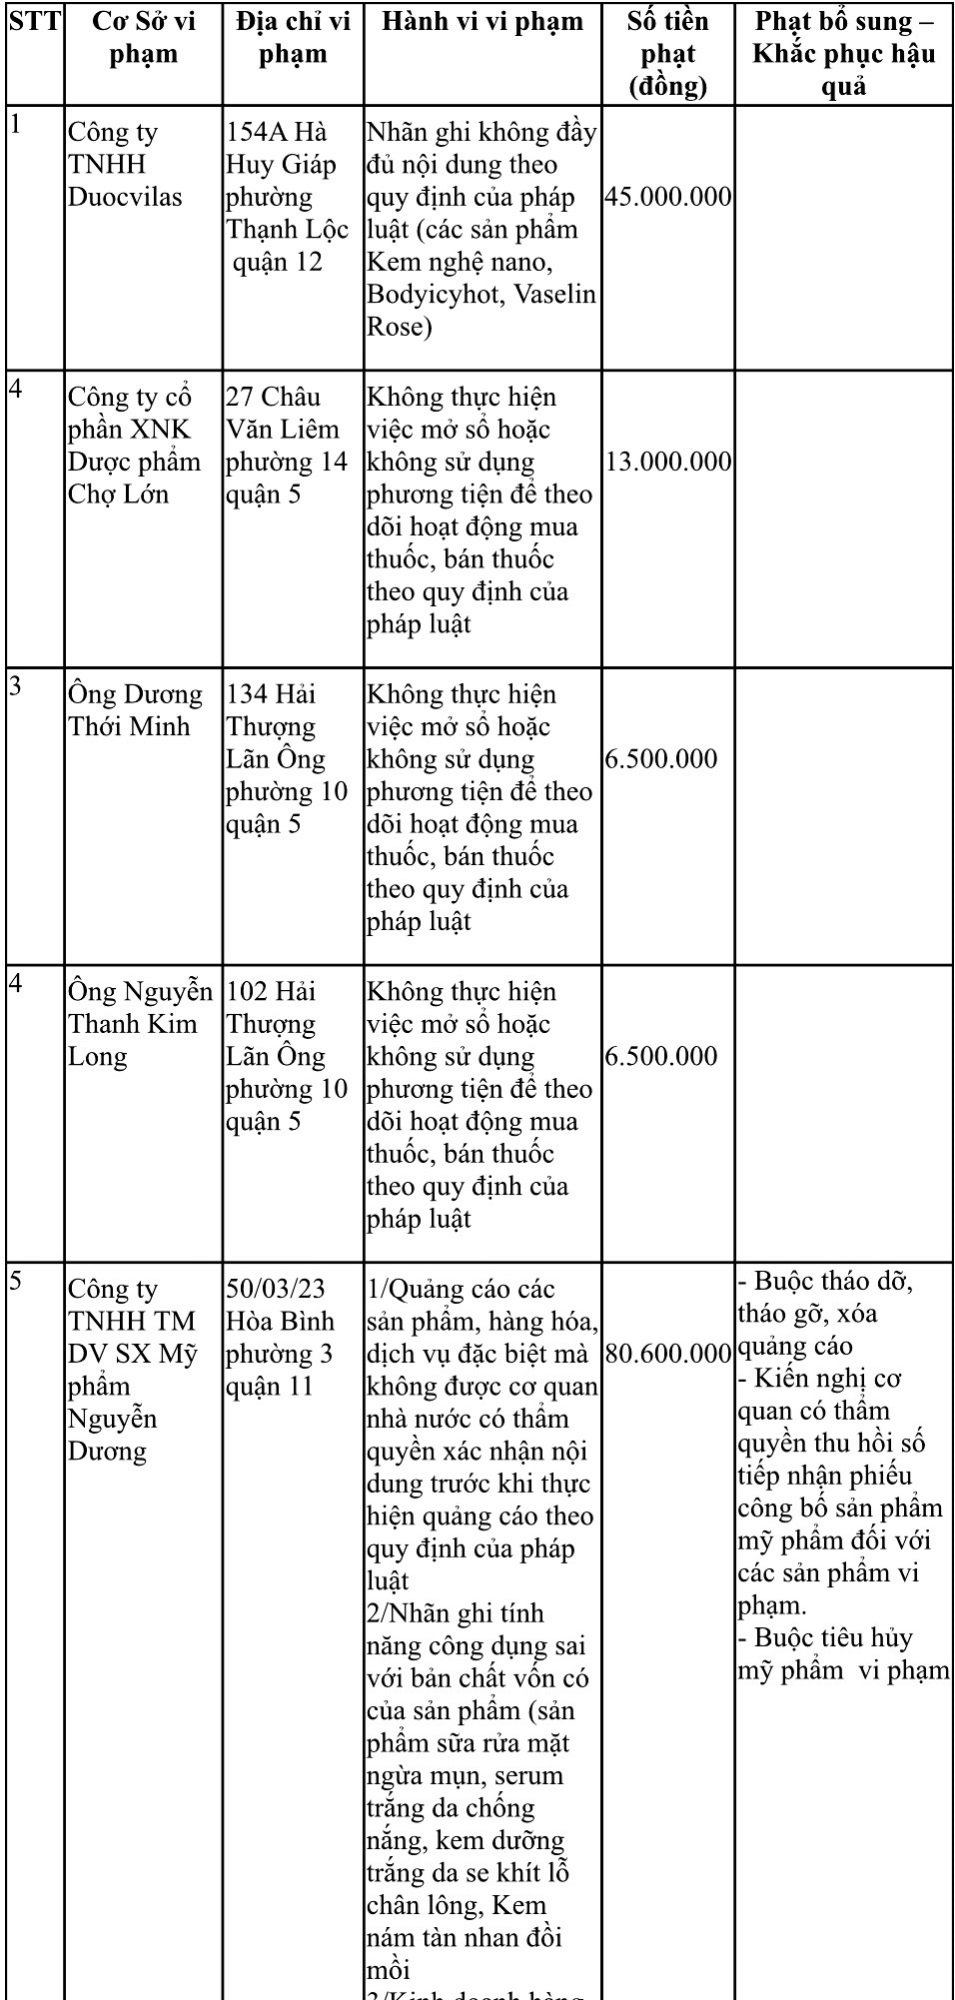 Công ty mỹ phẩm Nguyễn Dương bị phạt hơn 80 triệu đồng vì 'treo đầu dê bán thịt chó' - Ảnh 2